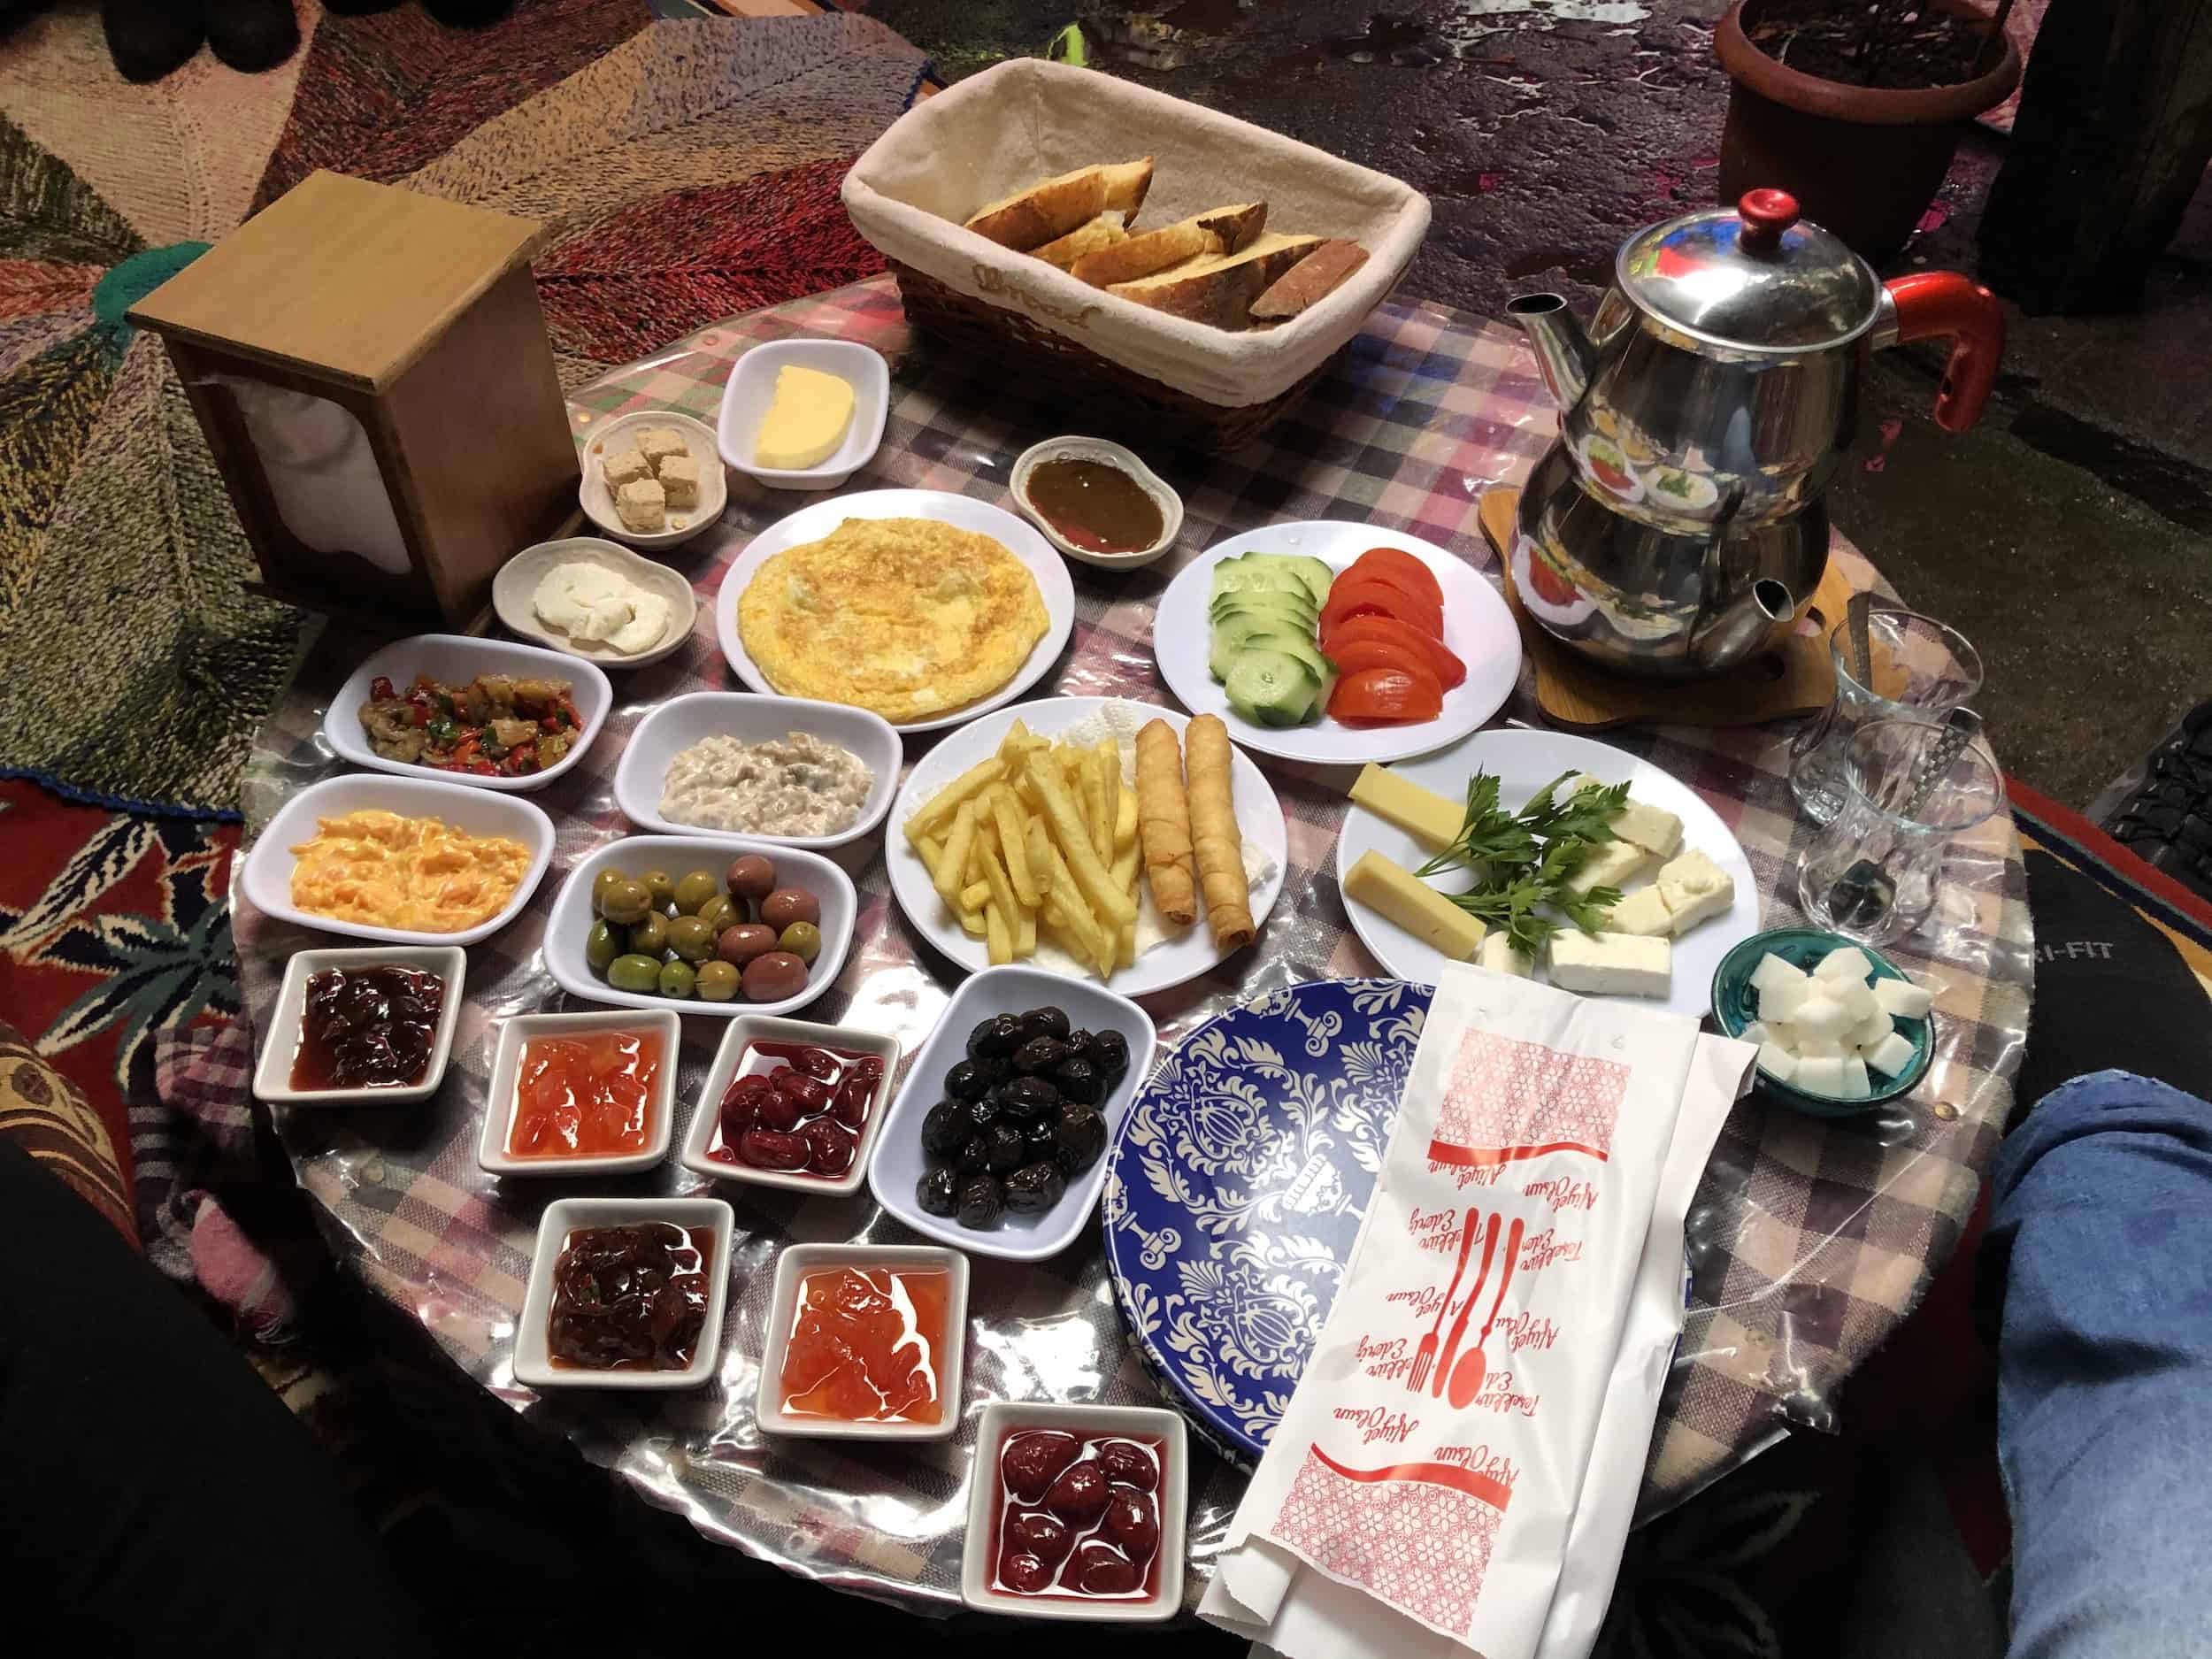 Turkish breakfast at the Kadı Efendi Konağı in Cumalıkızık, Bursa, Turkey